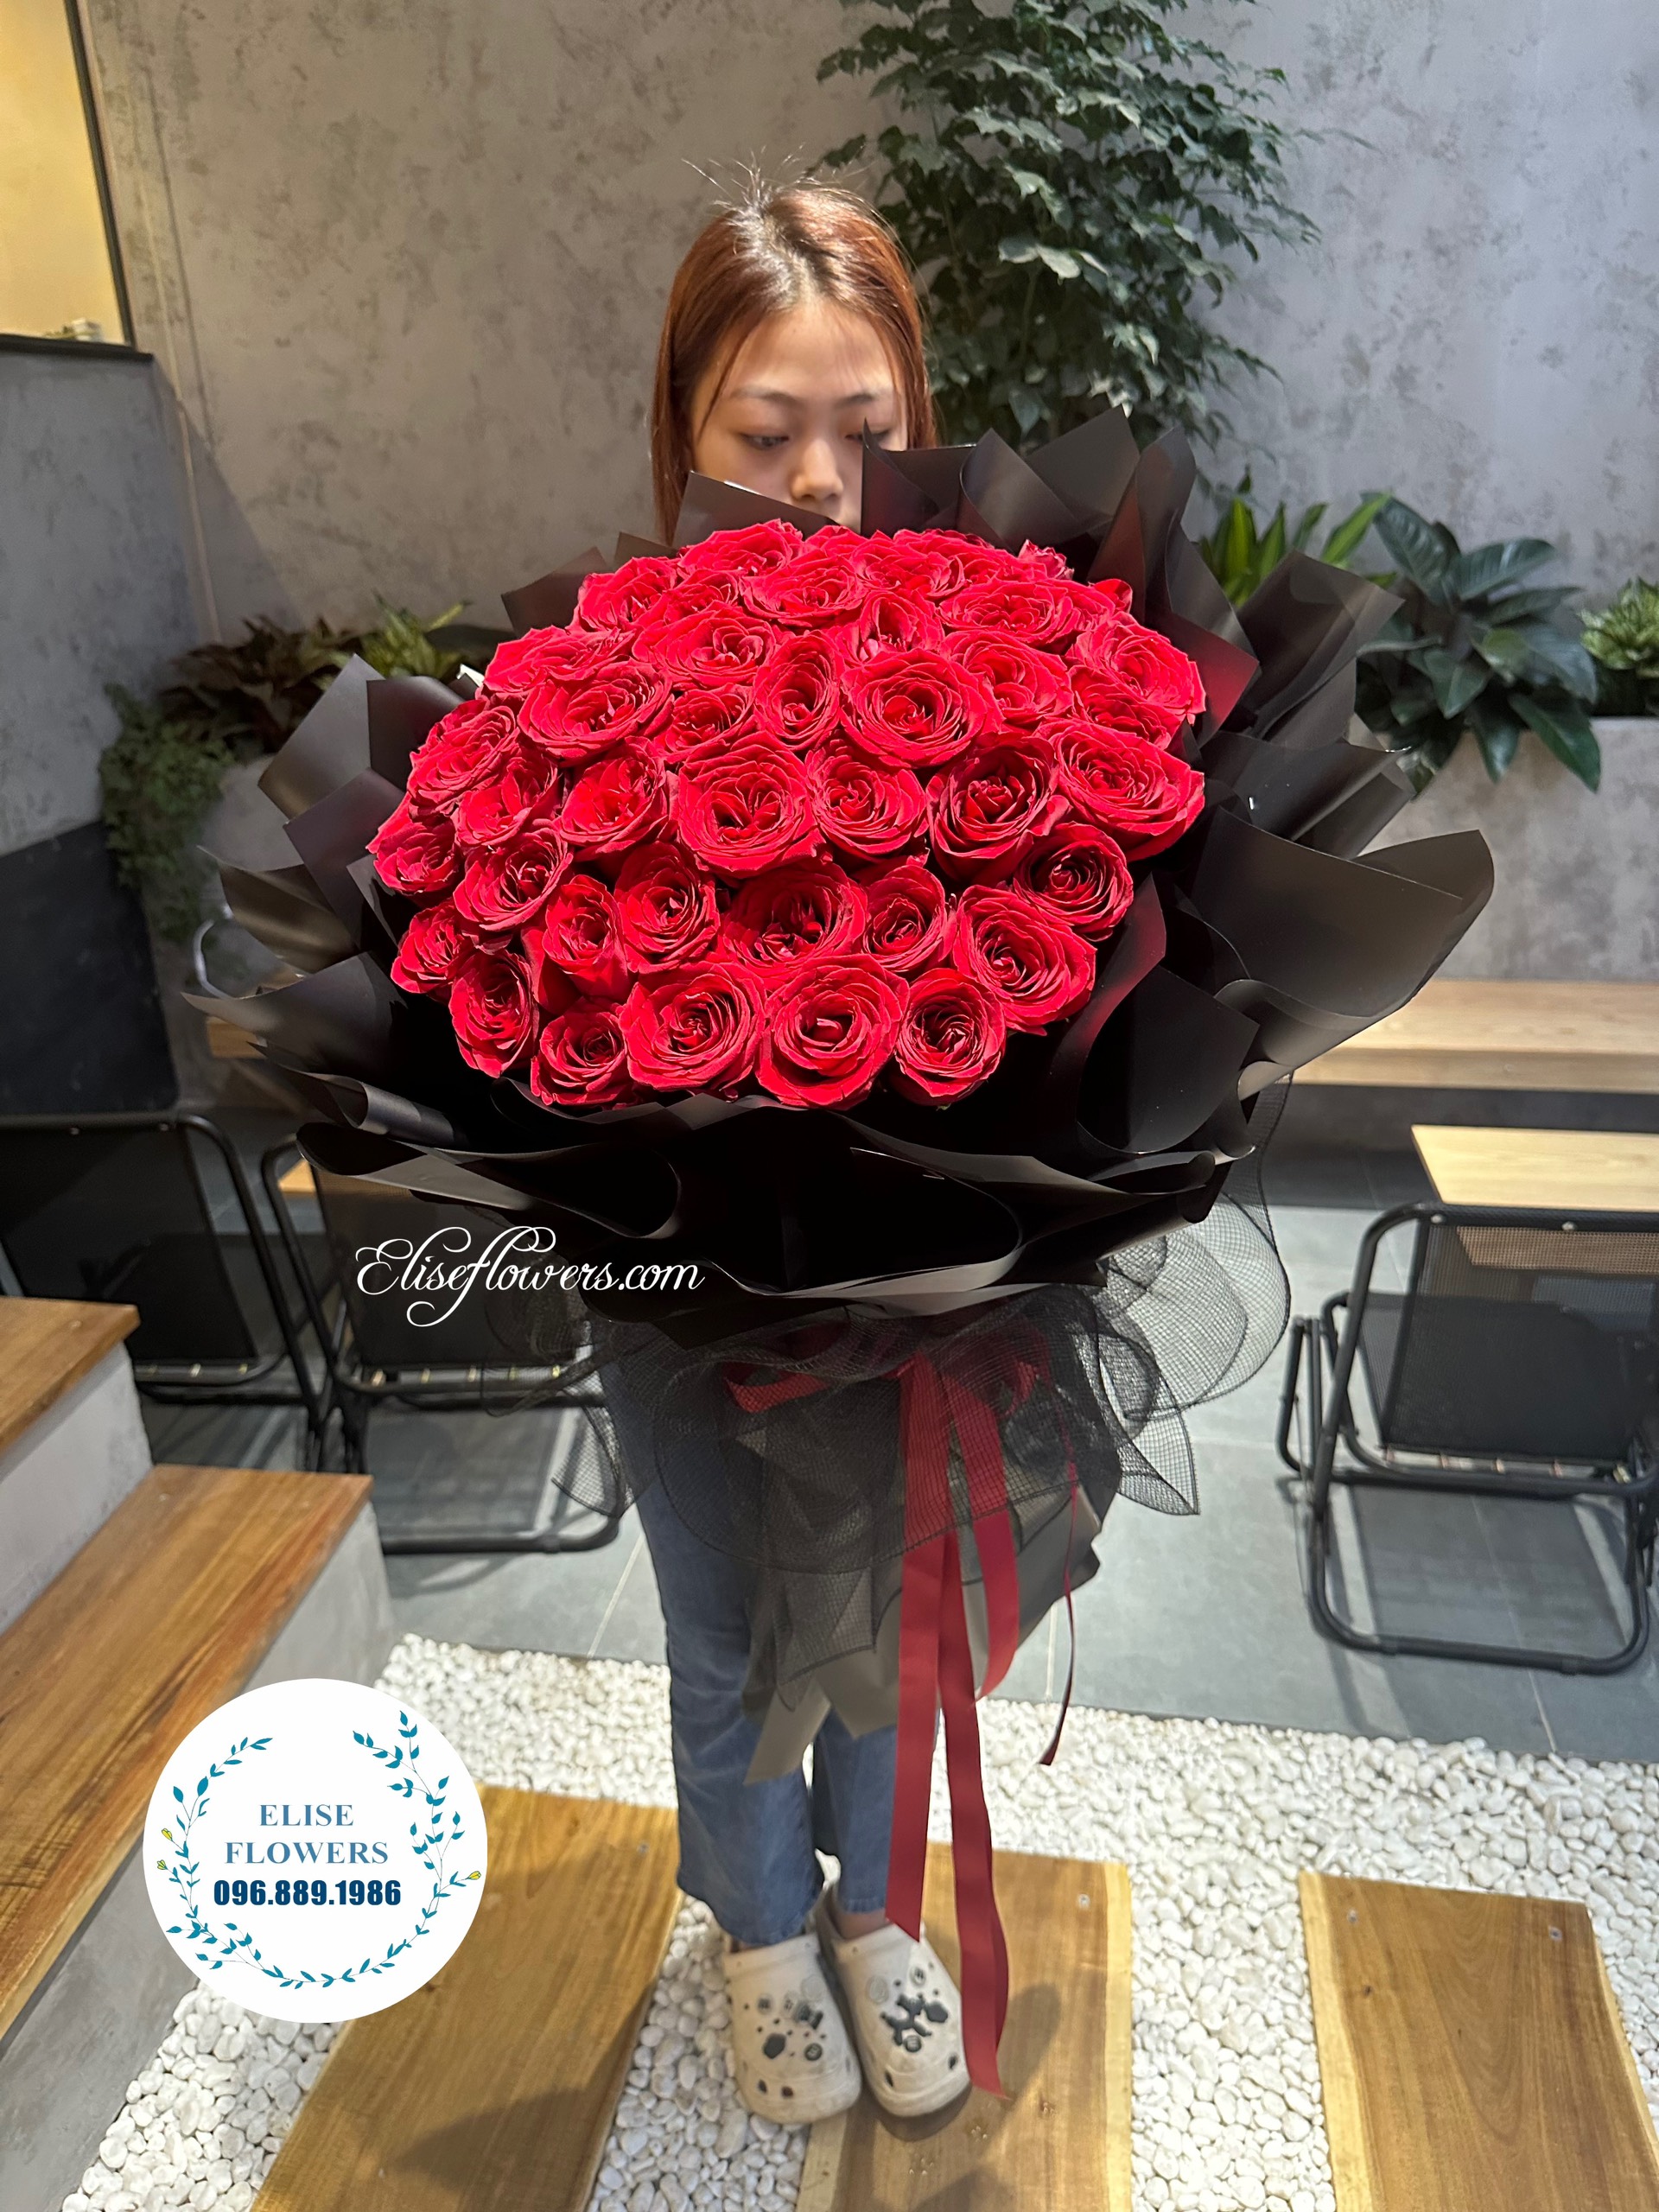 BÓ HOA HỒNG ĐỎ VALENTINE. Bó hoa hồng đỏ tặng bạn gái, vợ yêu ngày valentine ở Hà Nội. Đặt hoa valentine ở Hà Nội. Mua hoa hồng đỏ ở Hà Nội. Dịch vụ điện hoa valentine ở Hà Nội.